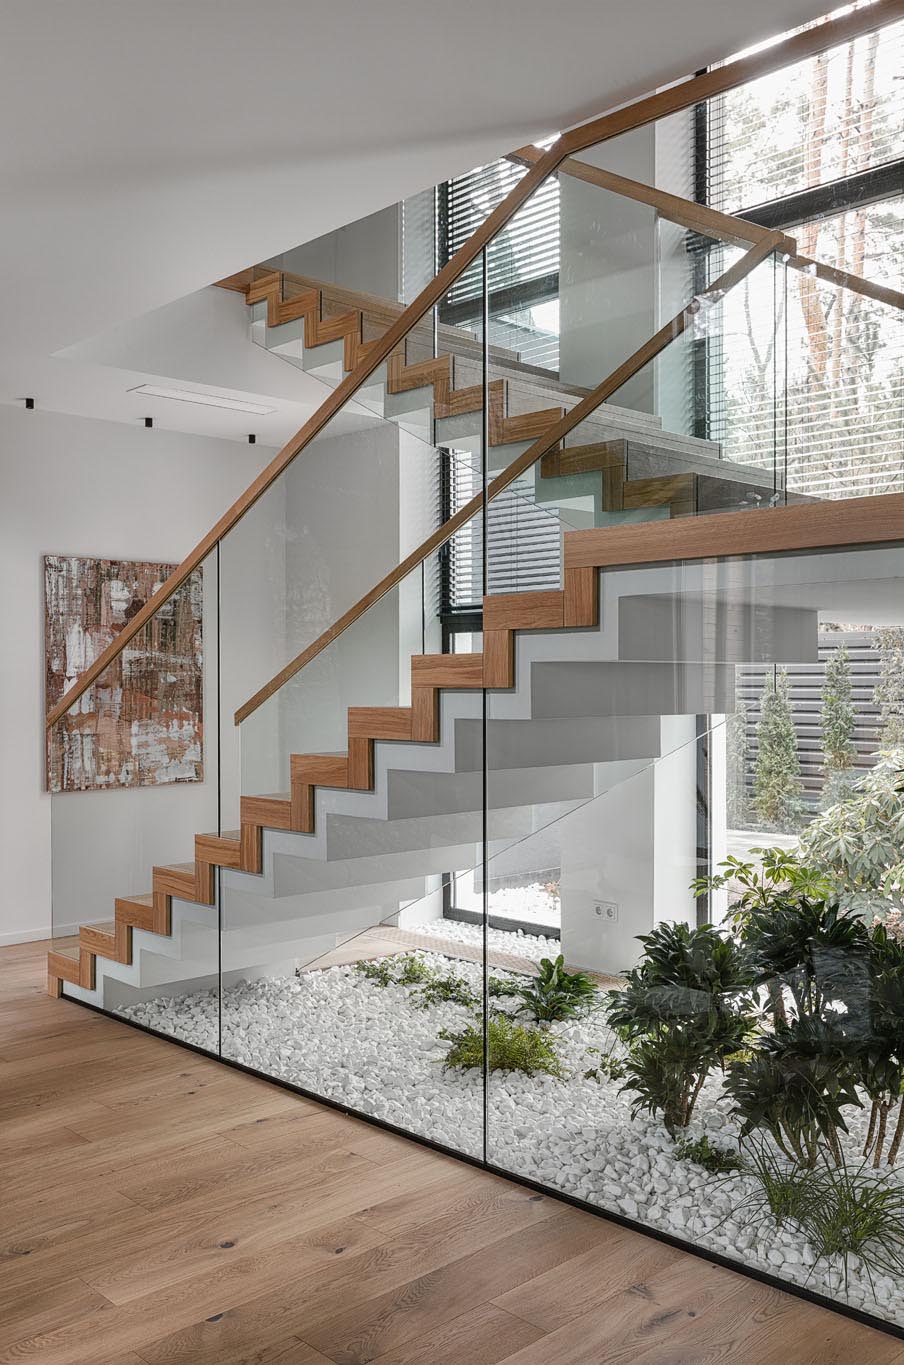 Những cầu thang hiện đại kết nối các tầng khác nhau của ngôi nhà được làm bằng bê tông, gỗ và kính.  Bên dưới cầu thang, đá và cây sống trong nhà đã được sử dụng để tạo ra một khu vườn nhỏ, mang không gian ngoài trời vào.